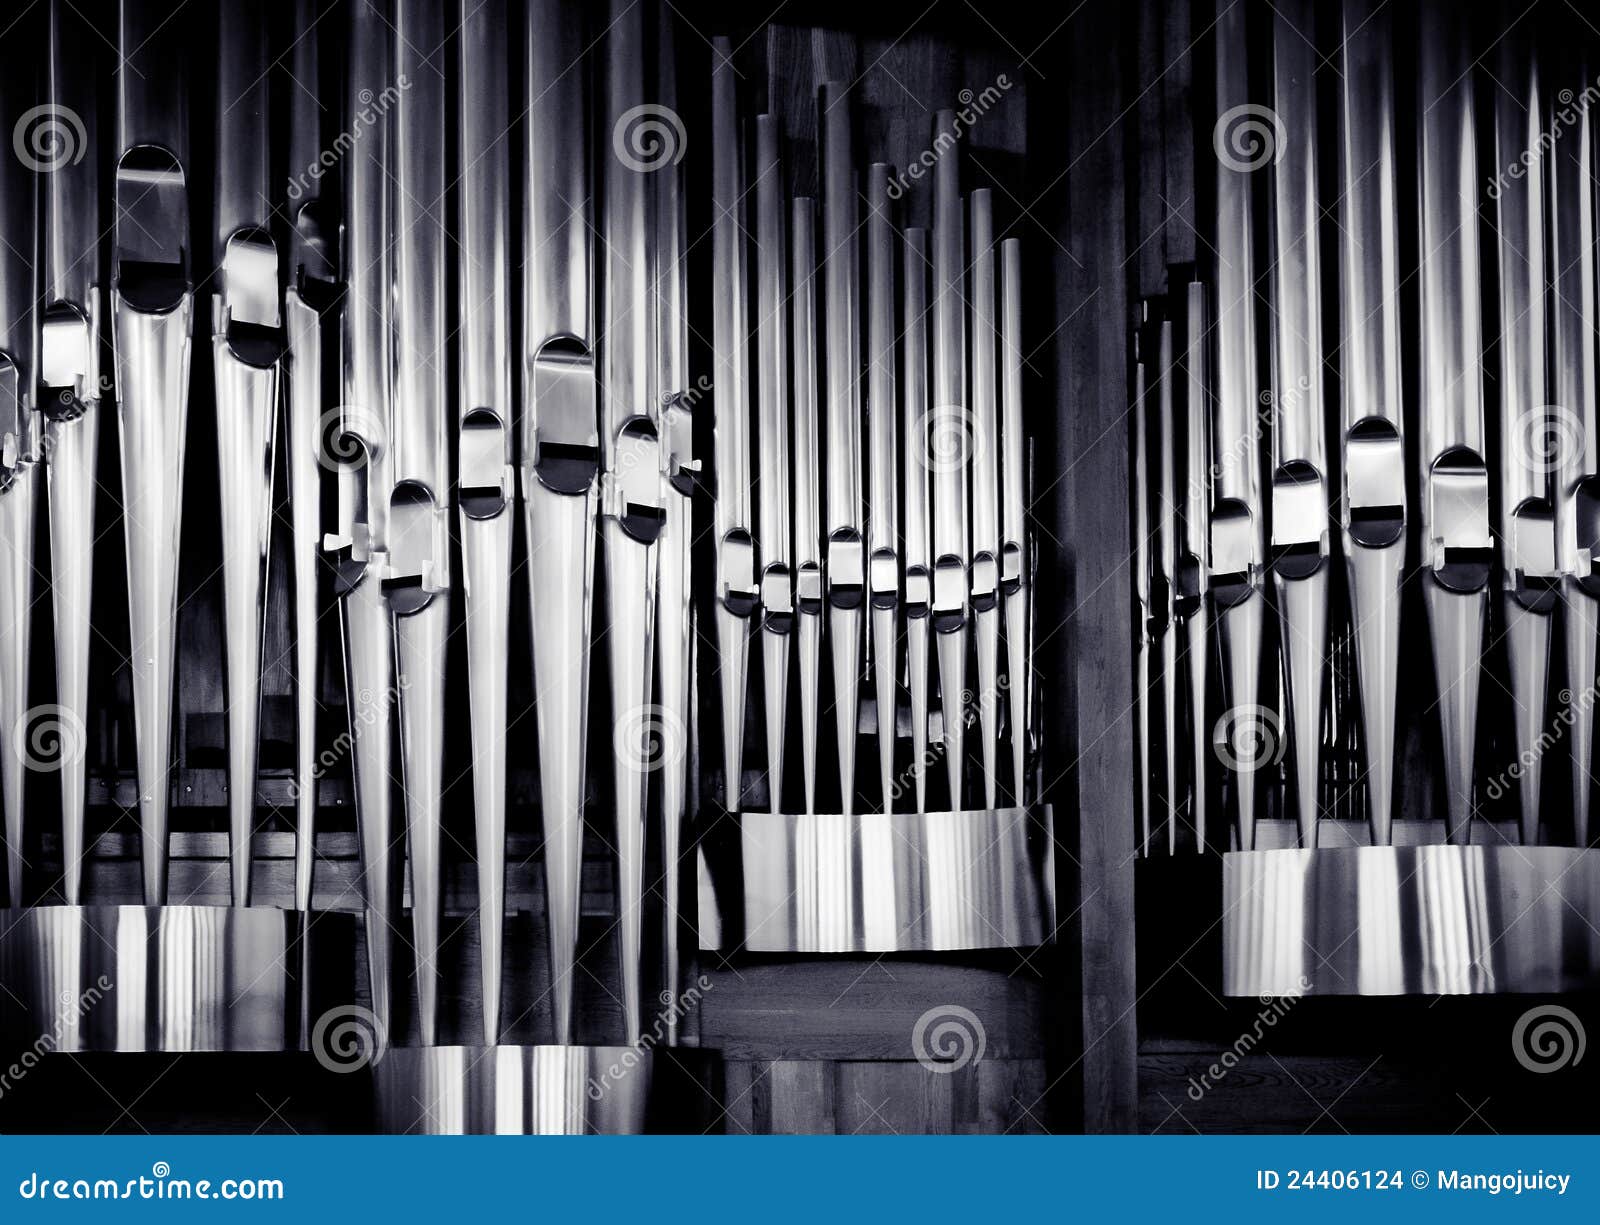 organ pipes set